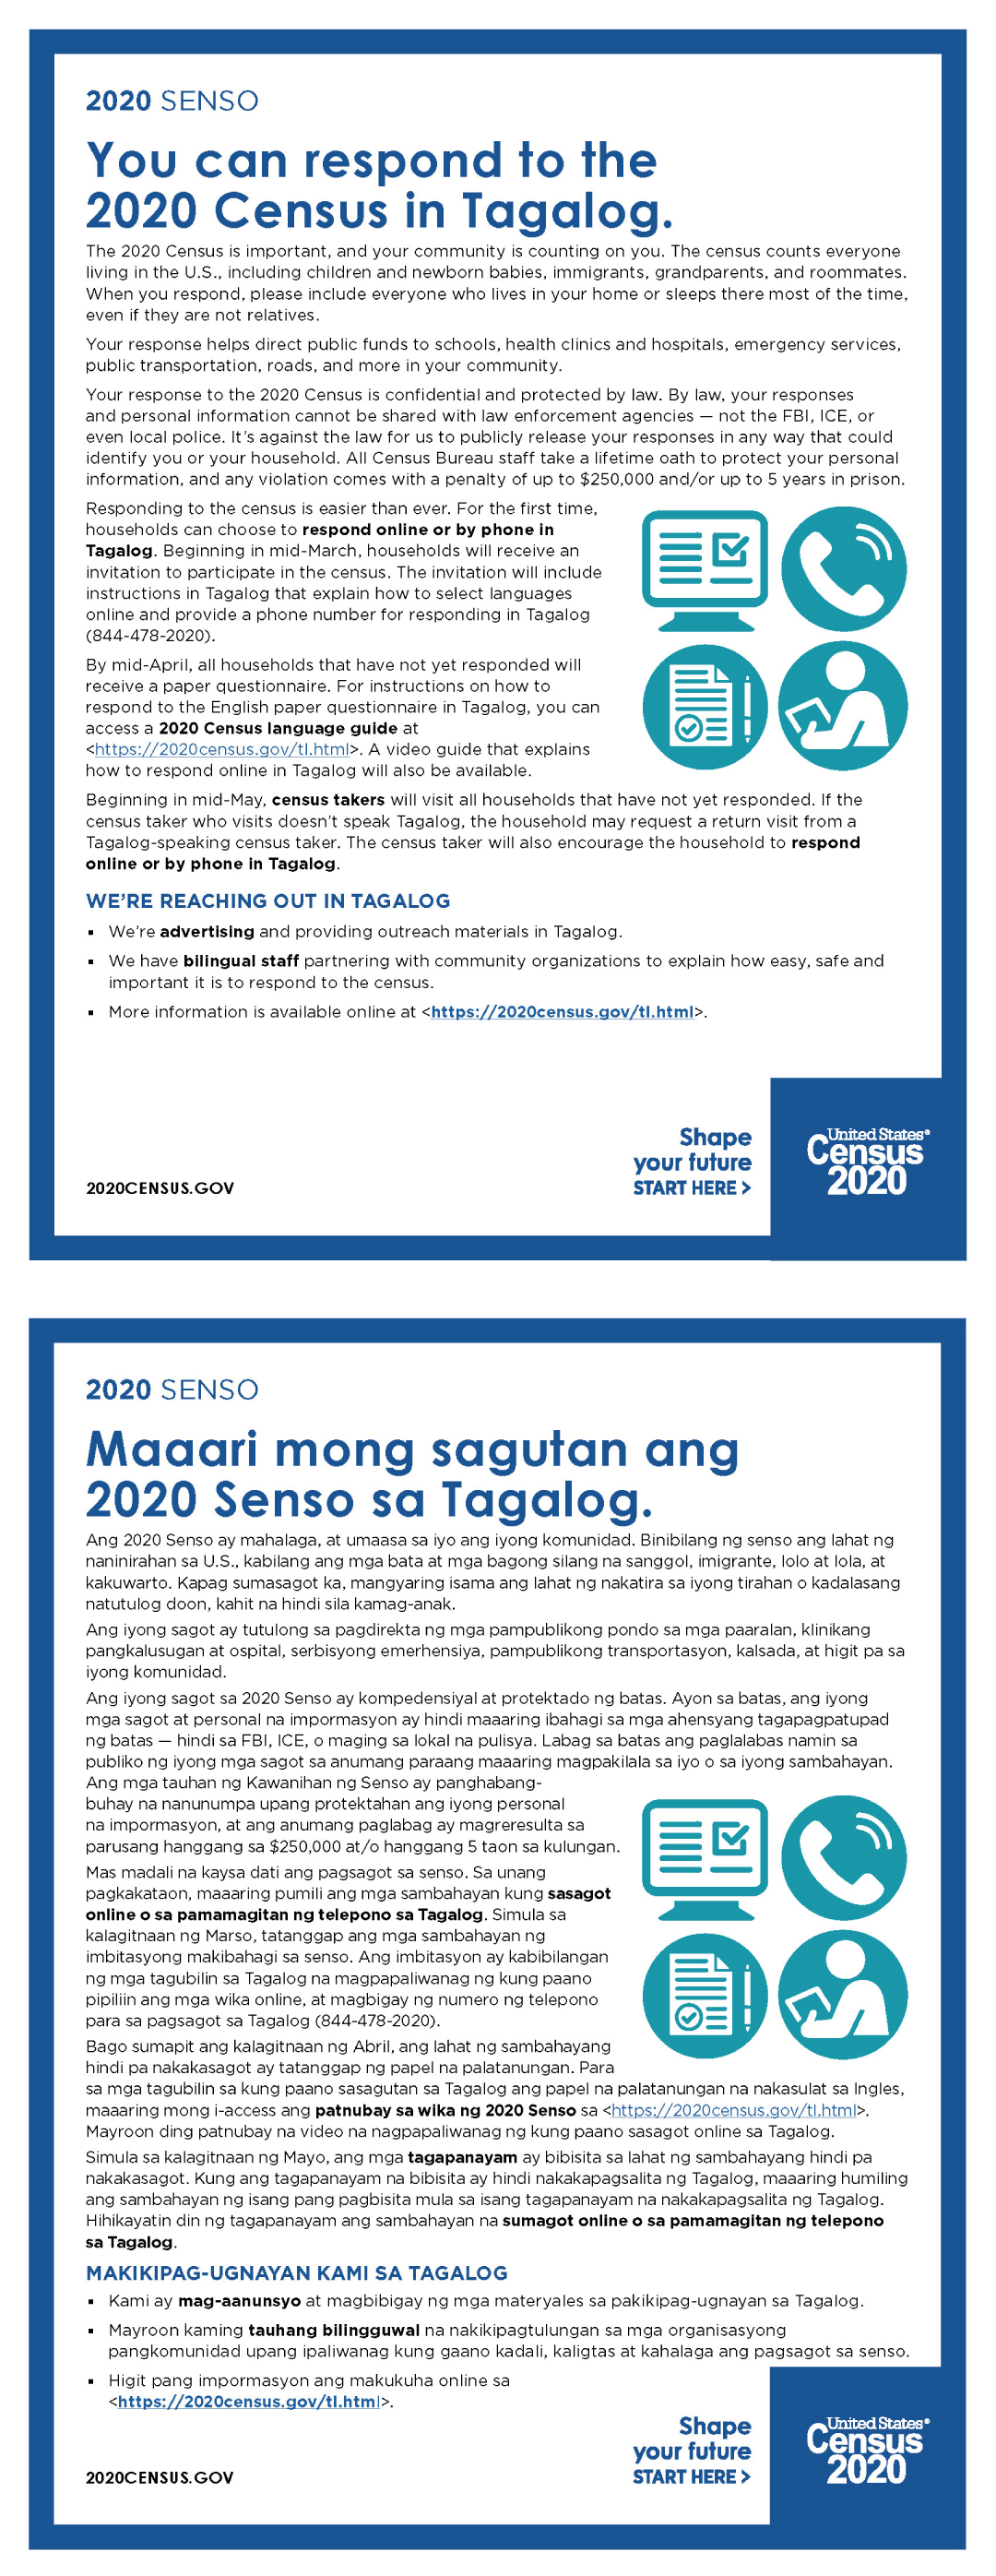 You can respond to the 2020 Census in Tagalog. (Maaari mong sagutan ang  2020 Senso sa Tagalog.)